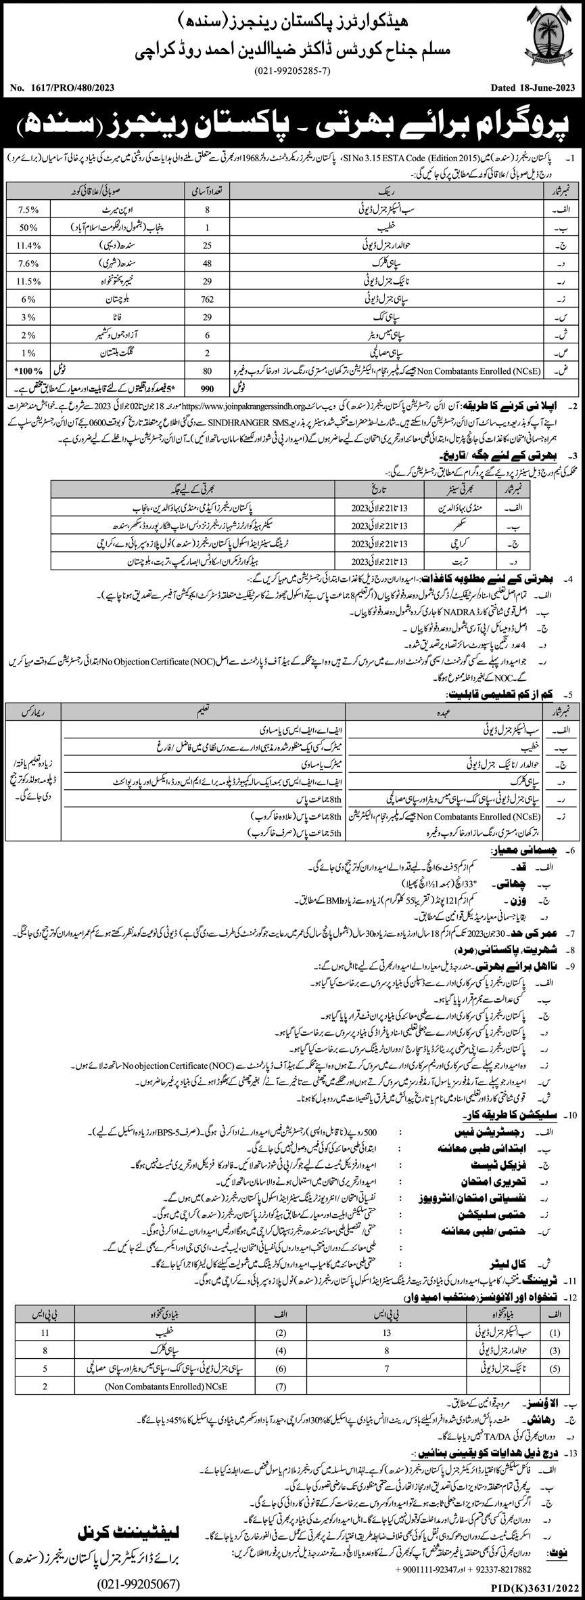 Pakistan Rangers Jobs apply online 